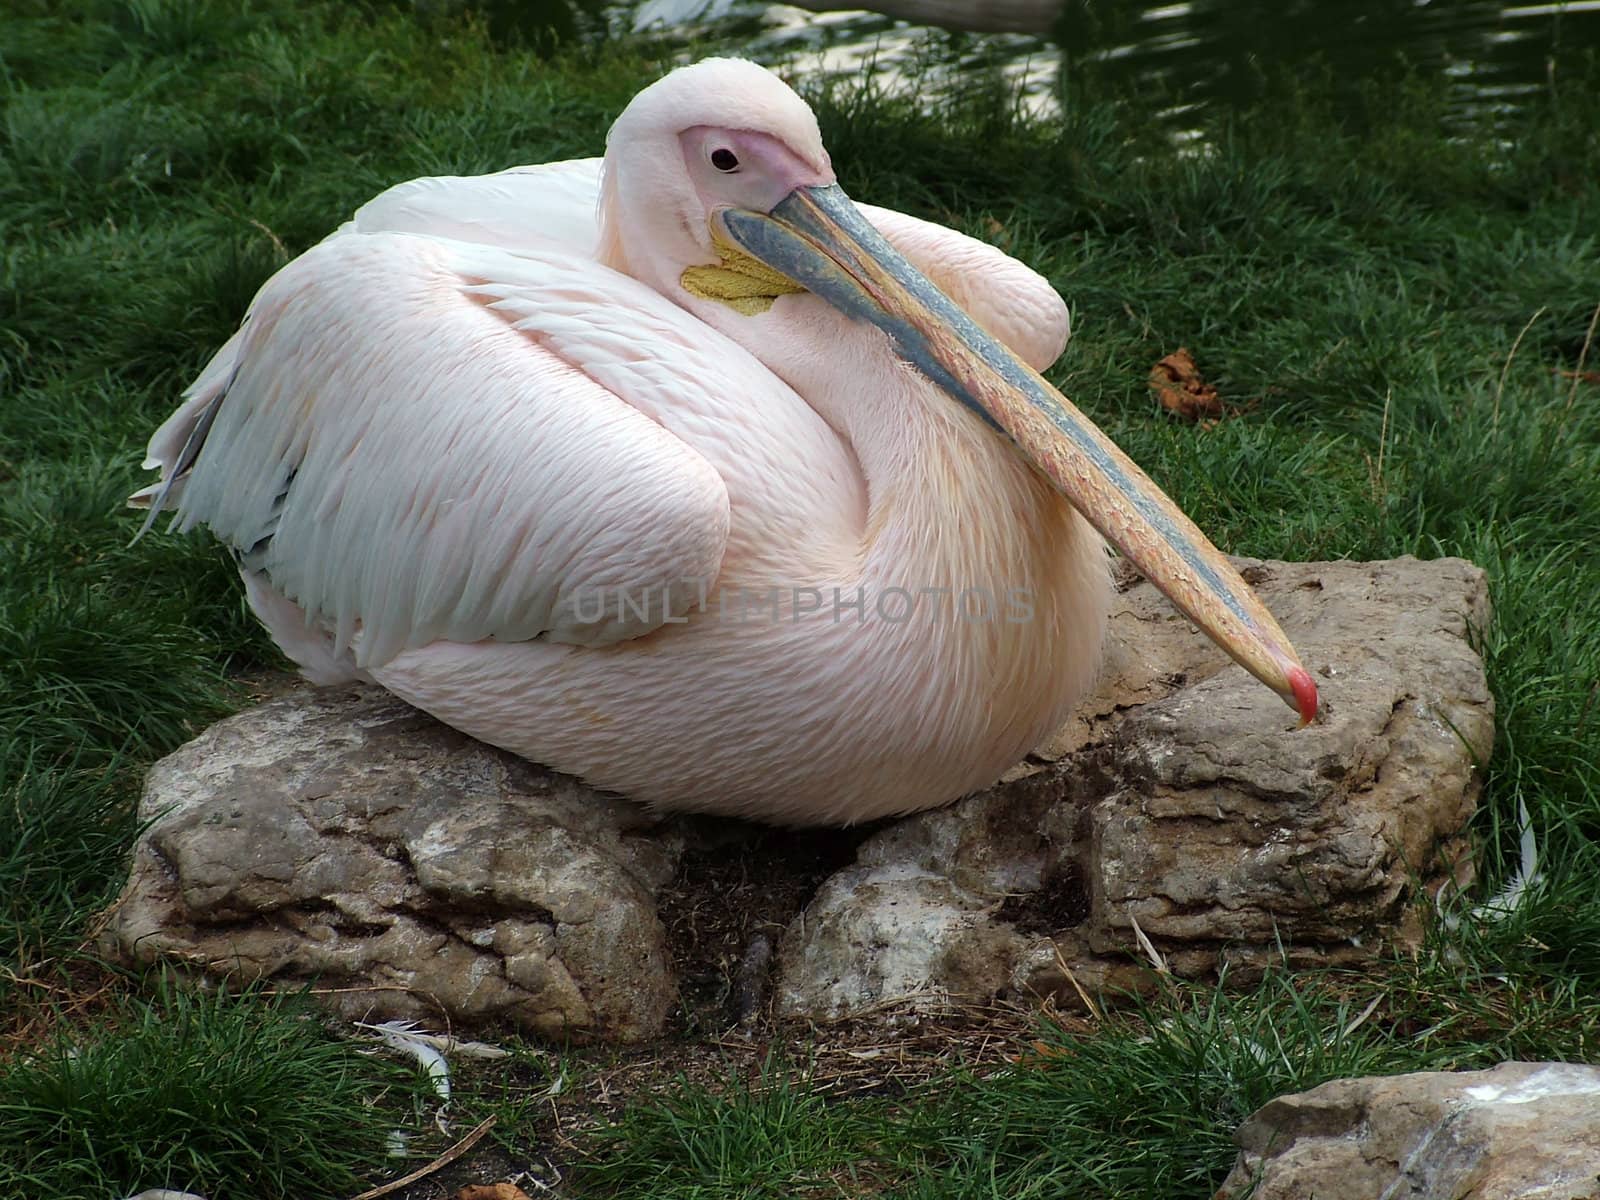 a stork taking a break